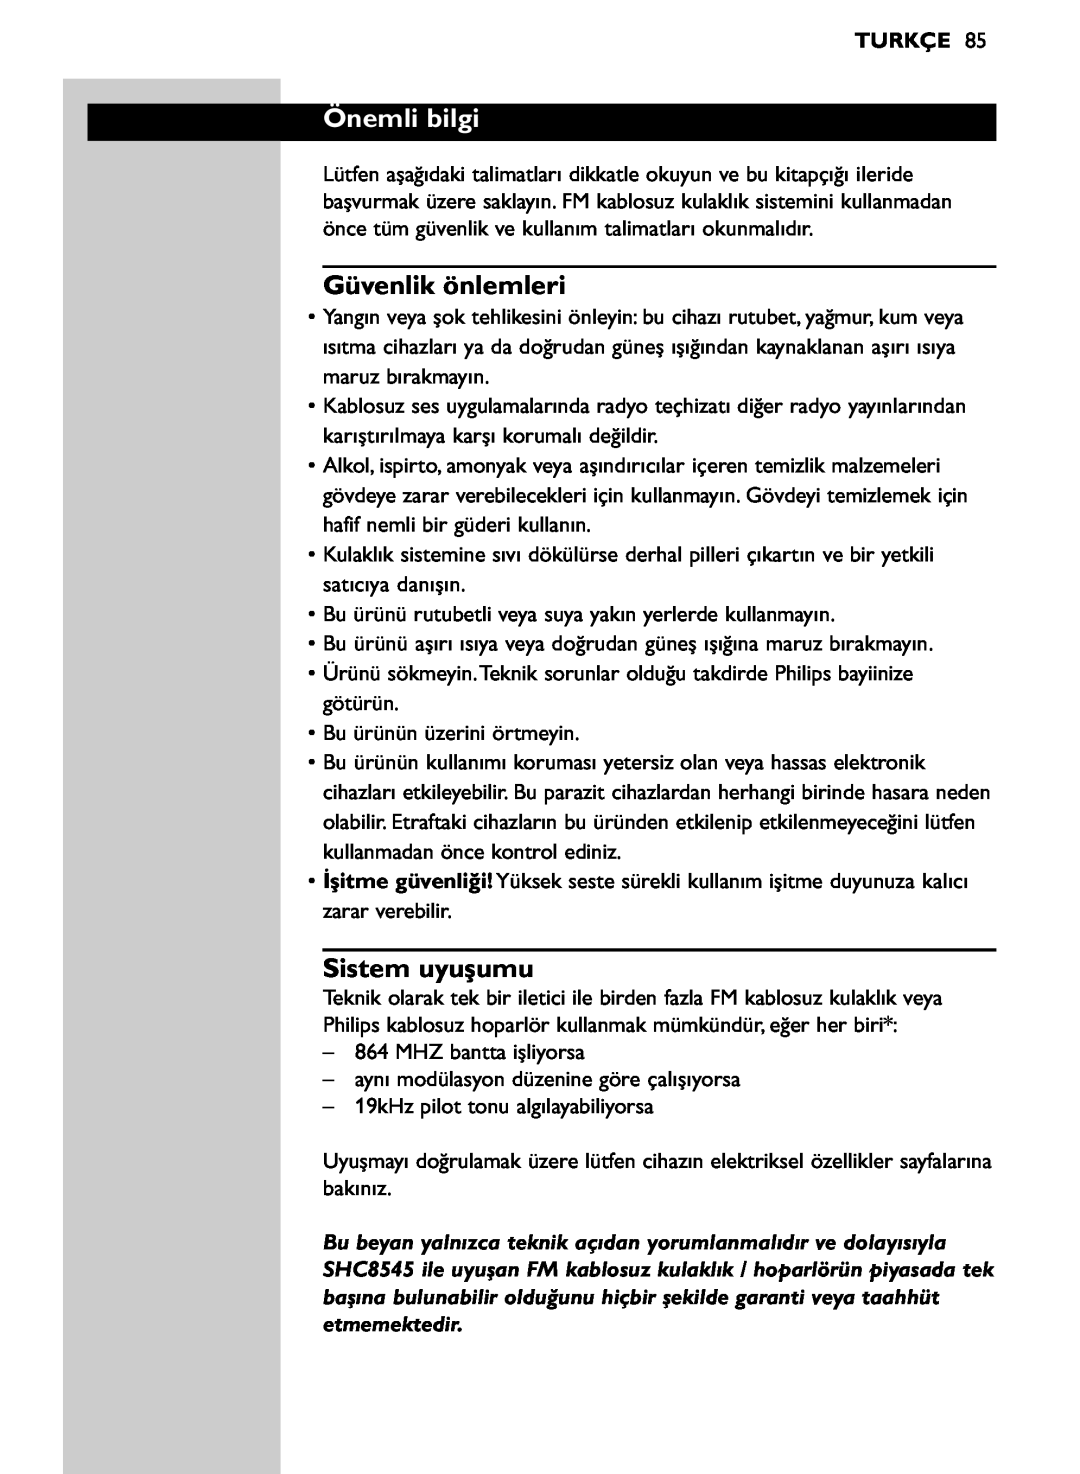 Philips SHC8545/00 manual Önemli bilgi, Güvenlik önlemleri, Sistem uyuşumu, Turkçe 